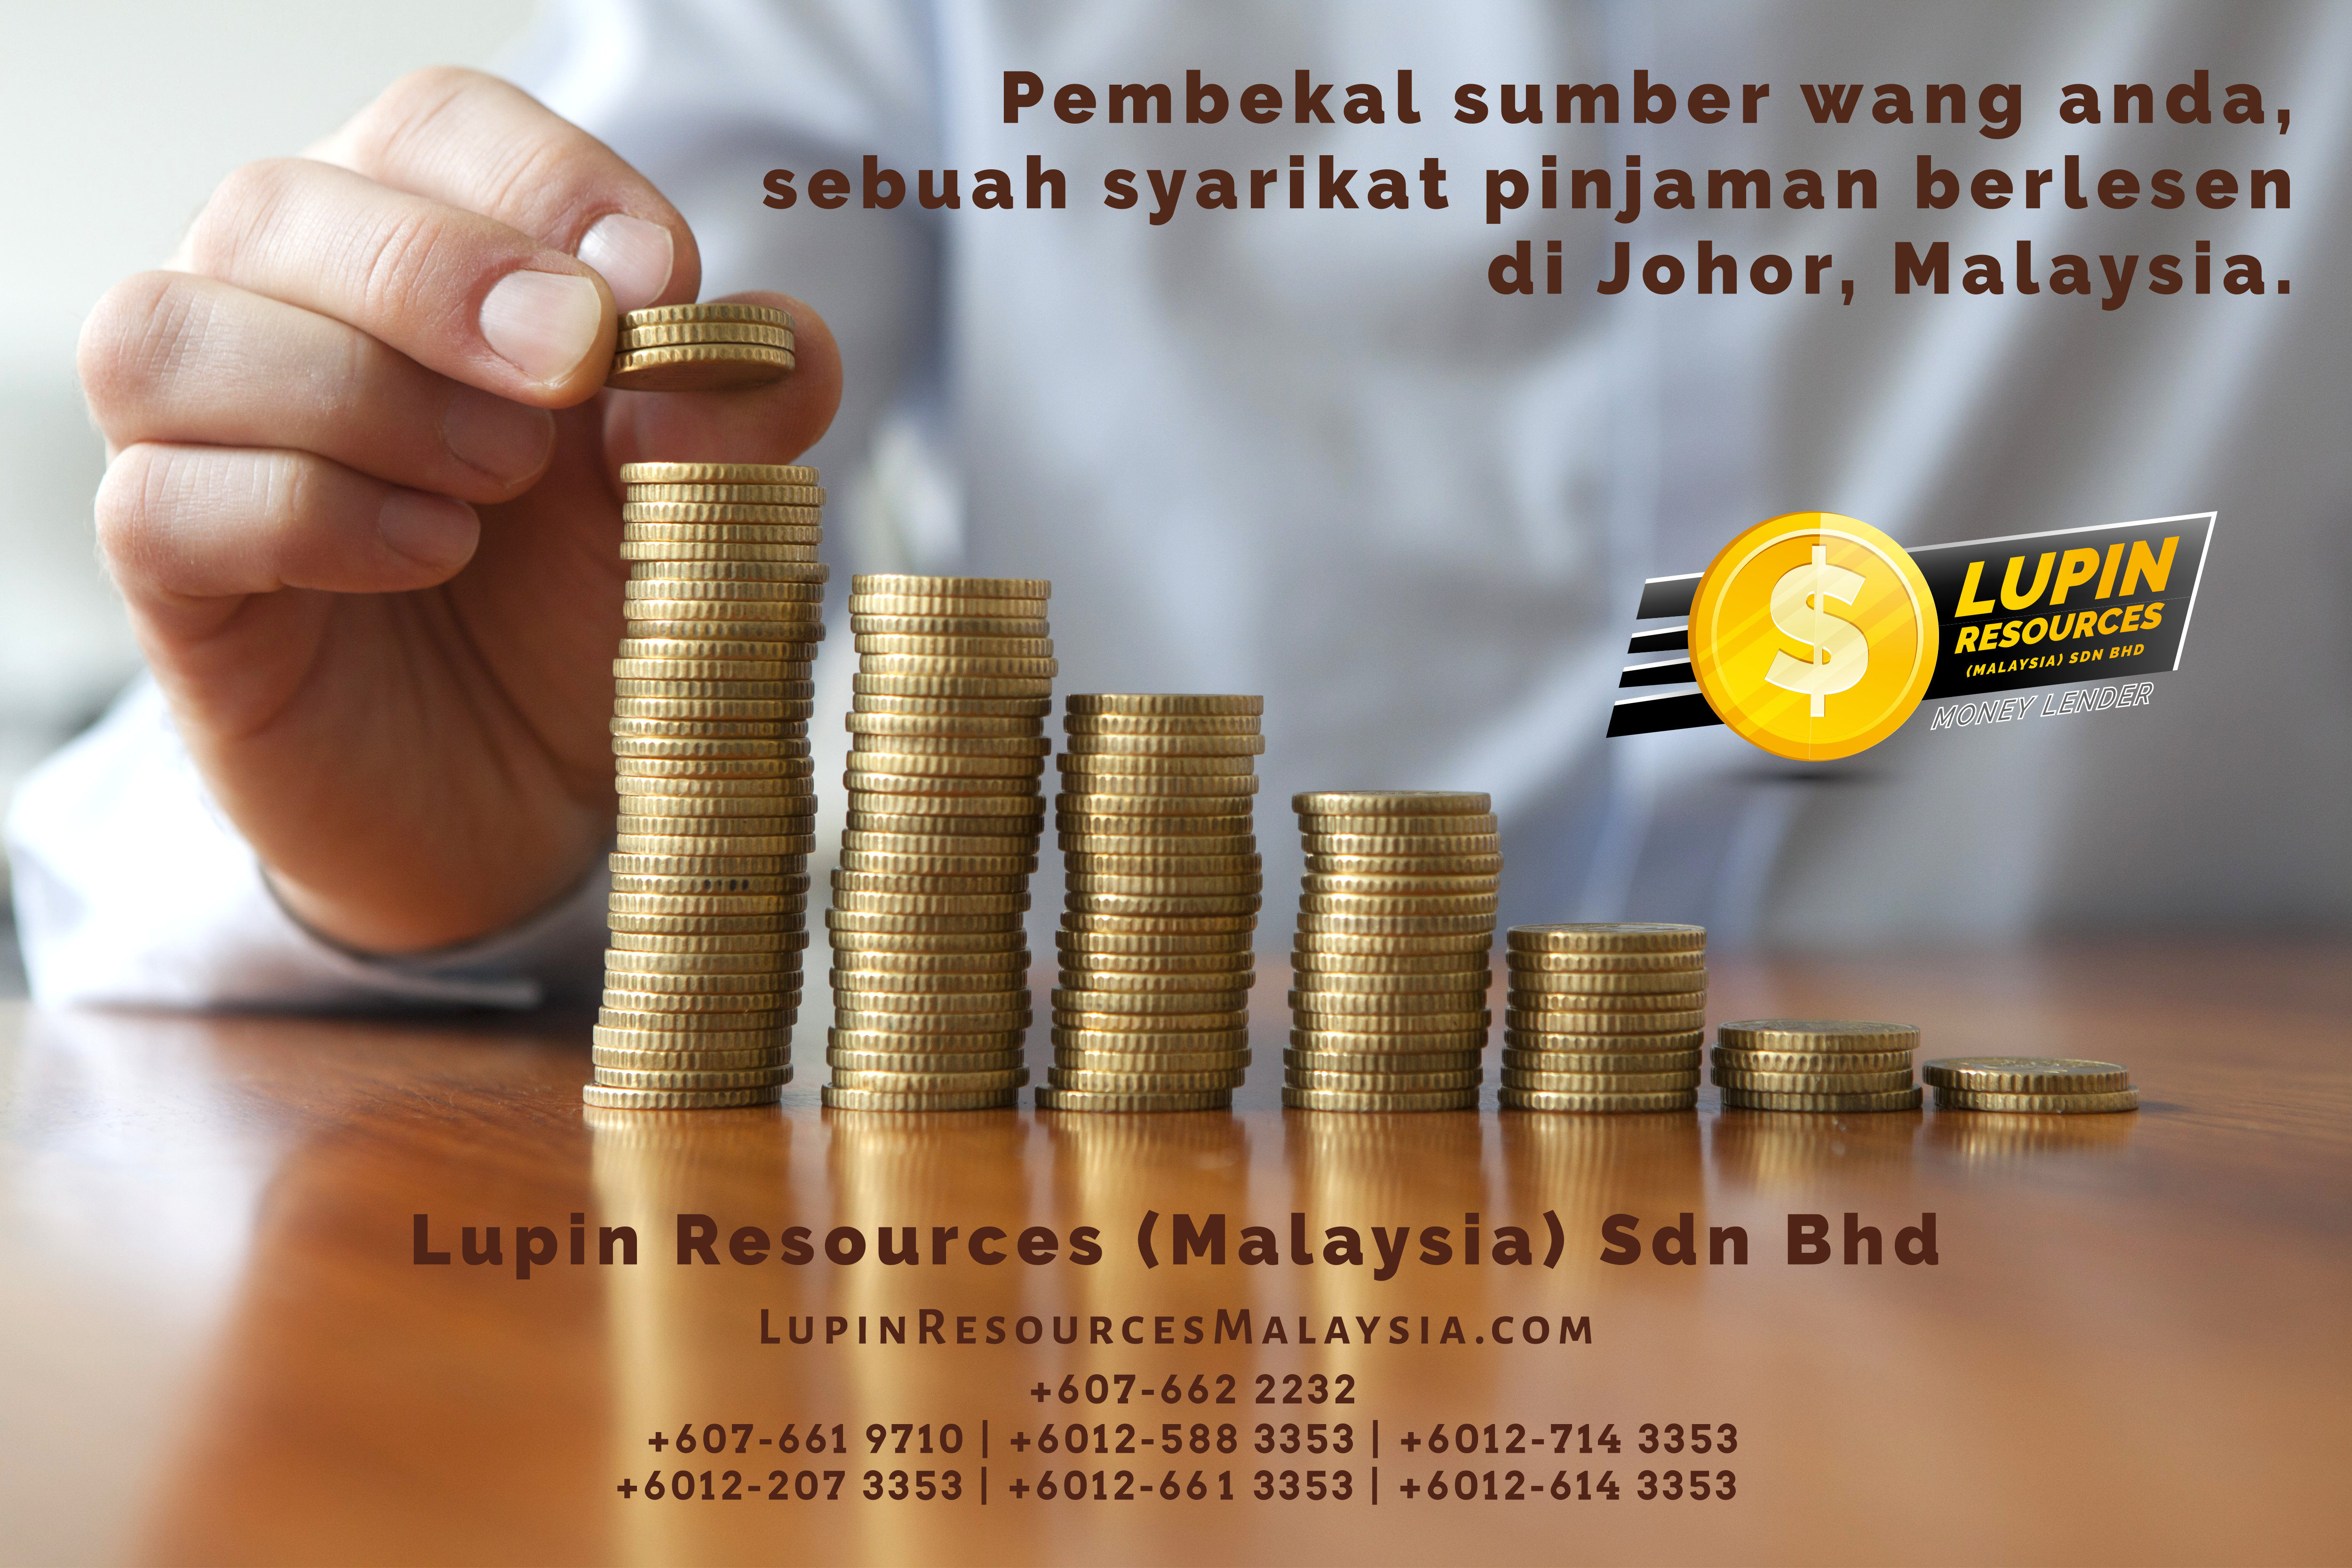 Johor Syarikat Pinjaman Berlesen Lupin Resources Malaysia SDN BHD Pembekal Sumber Wang Anda Kulai Johor Bahru Johor Malaysia Pinjaman Perniagaan Pinjaman Peribadi A01-26